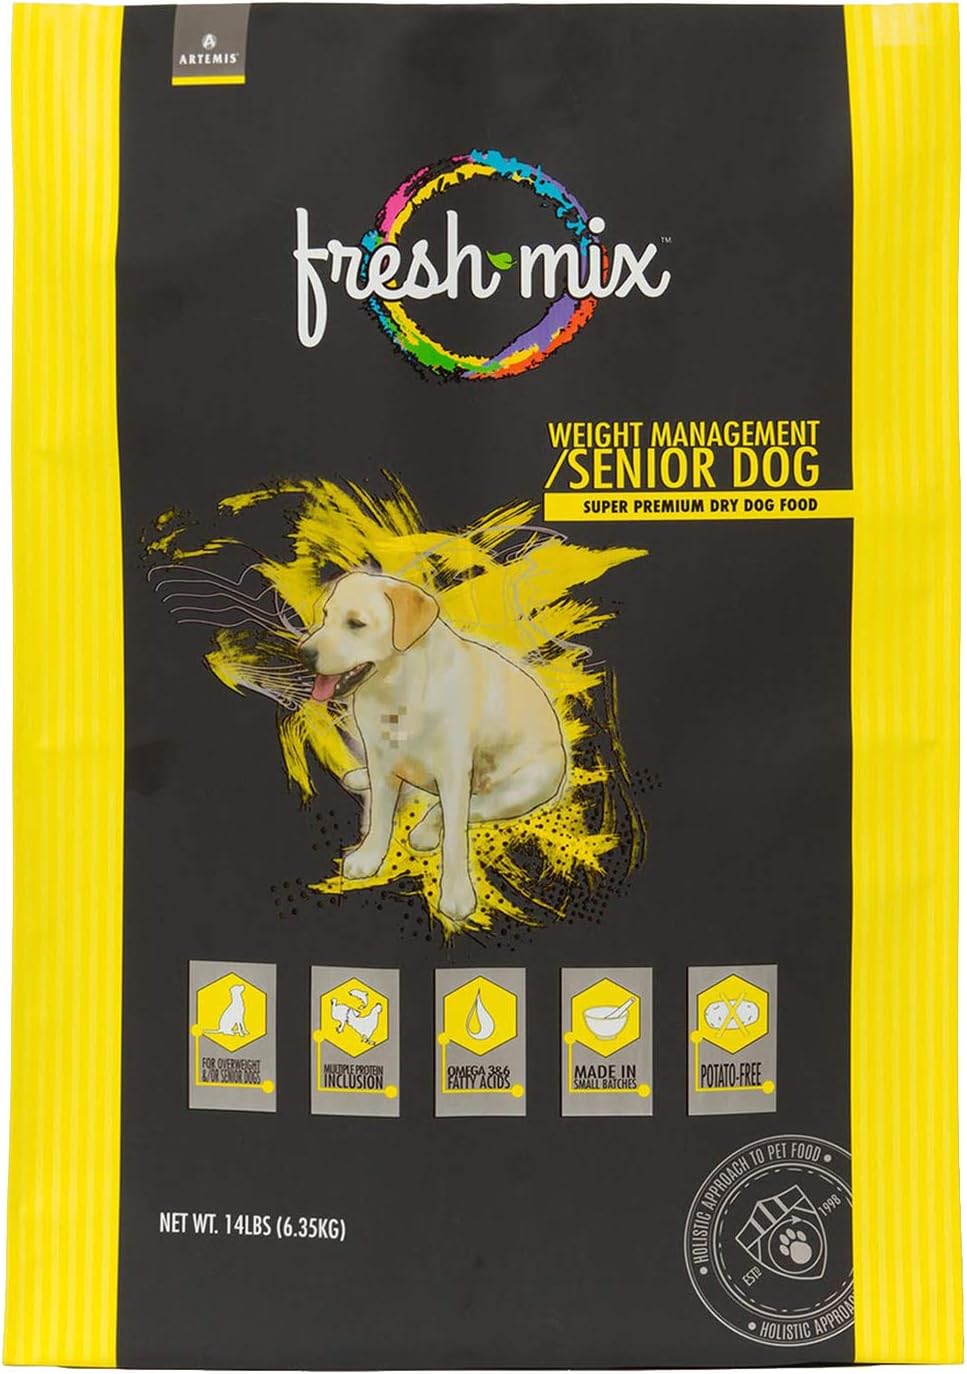 Artemis Fresh Mix Weight Management / Senior Dog Dry Dog Food – Gallery Image 1